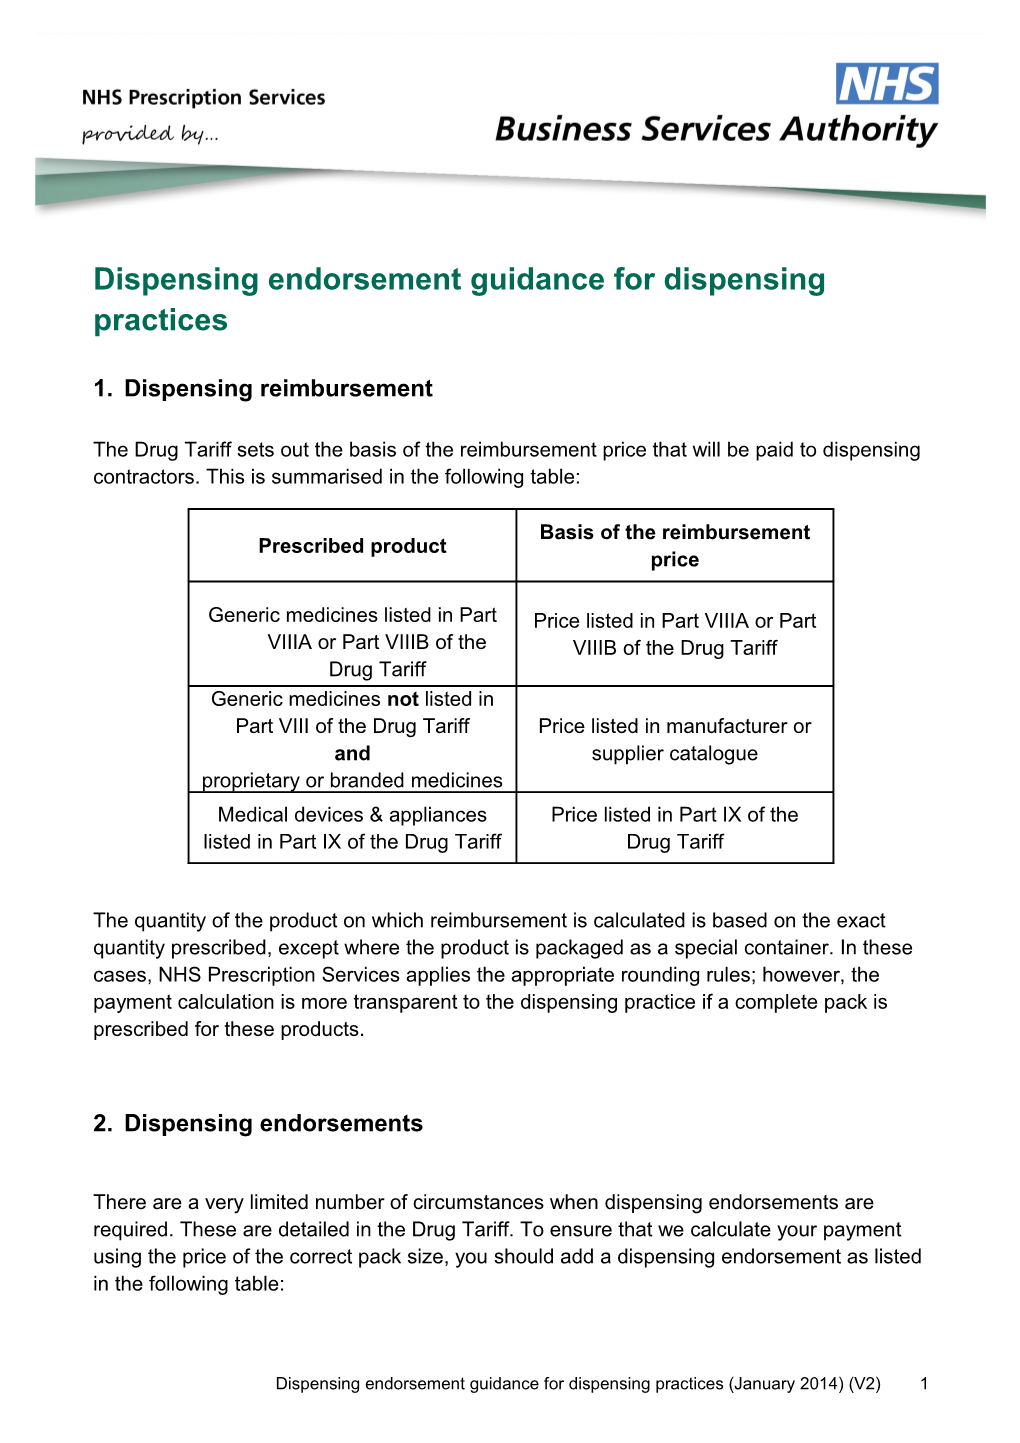 Dispensing Endorsement Guidance for Dispensing Practices V2.0